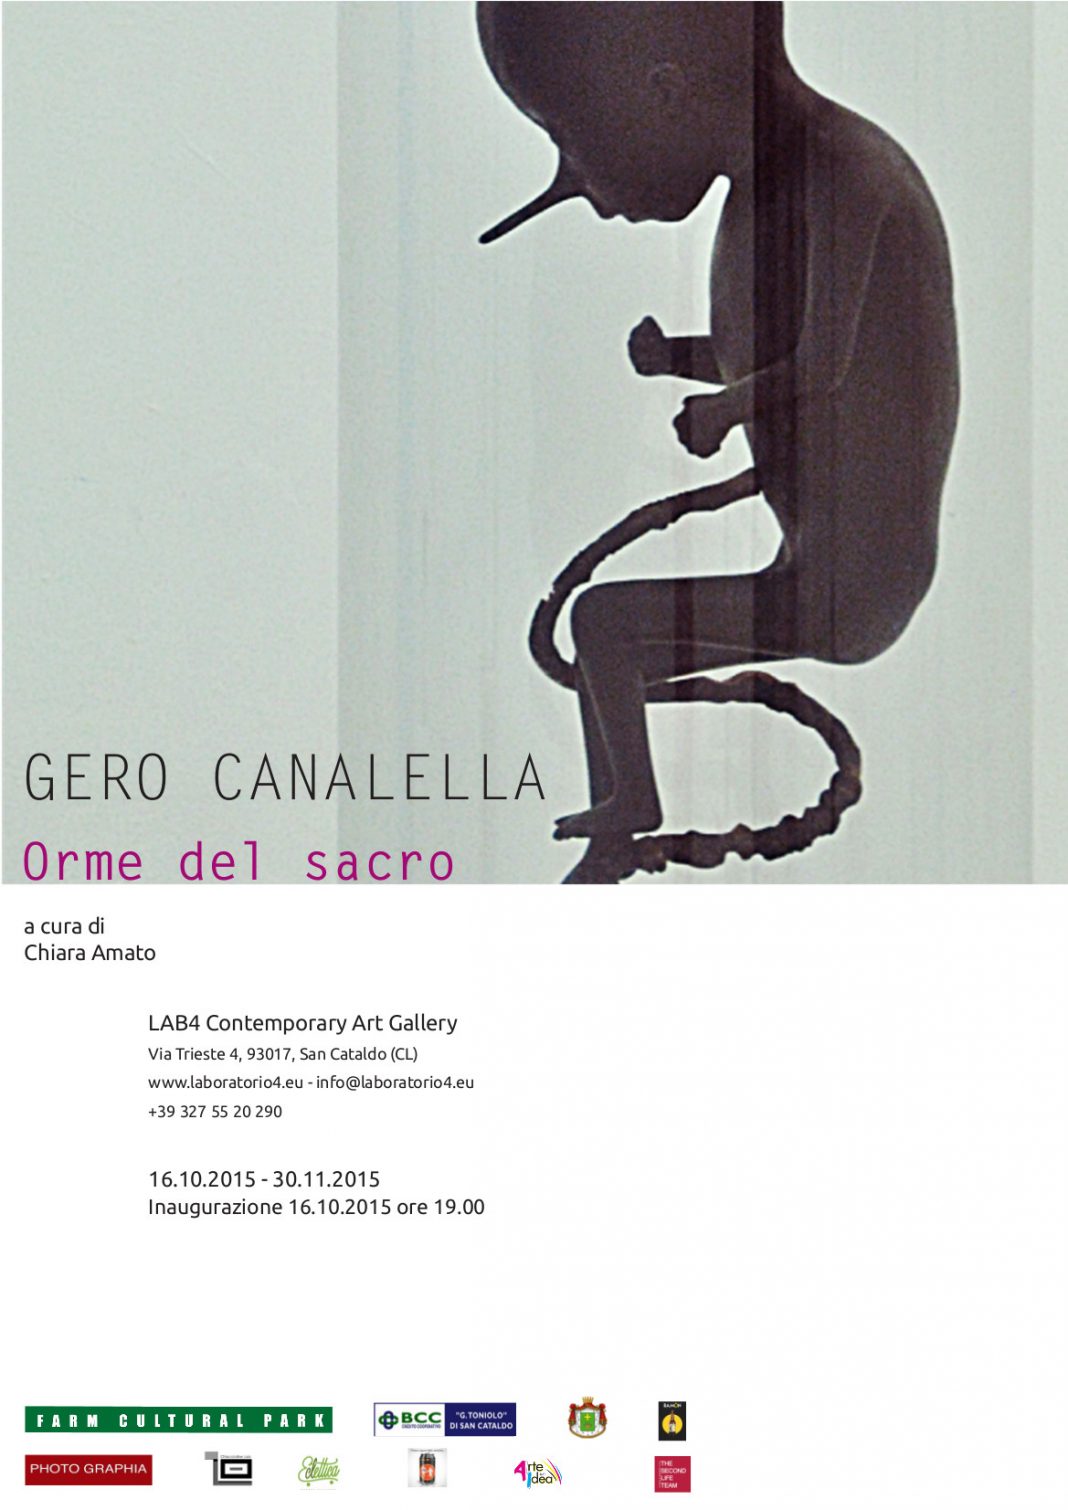 Gero Canalella – Orme del sacrohttps://www.exibart.com/repository/media/eventi/2015/09/gero-canalella-8211-orme-del-sacro-1-1068x1510.jpg